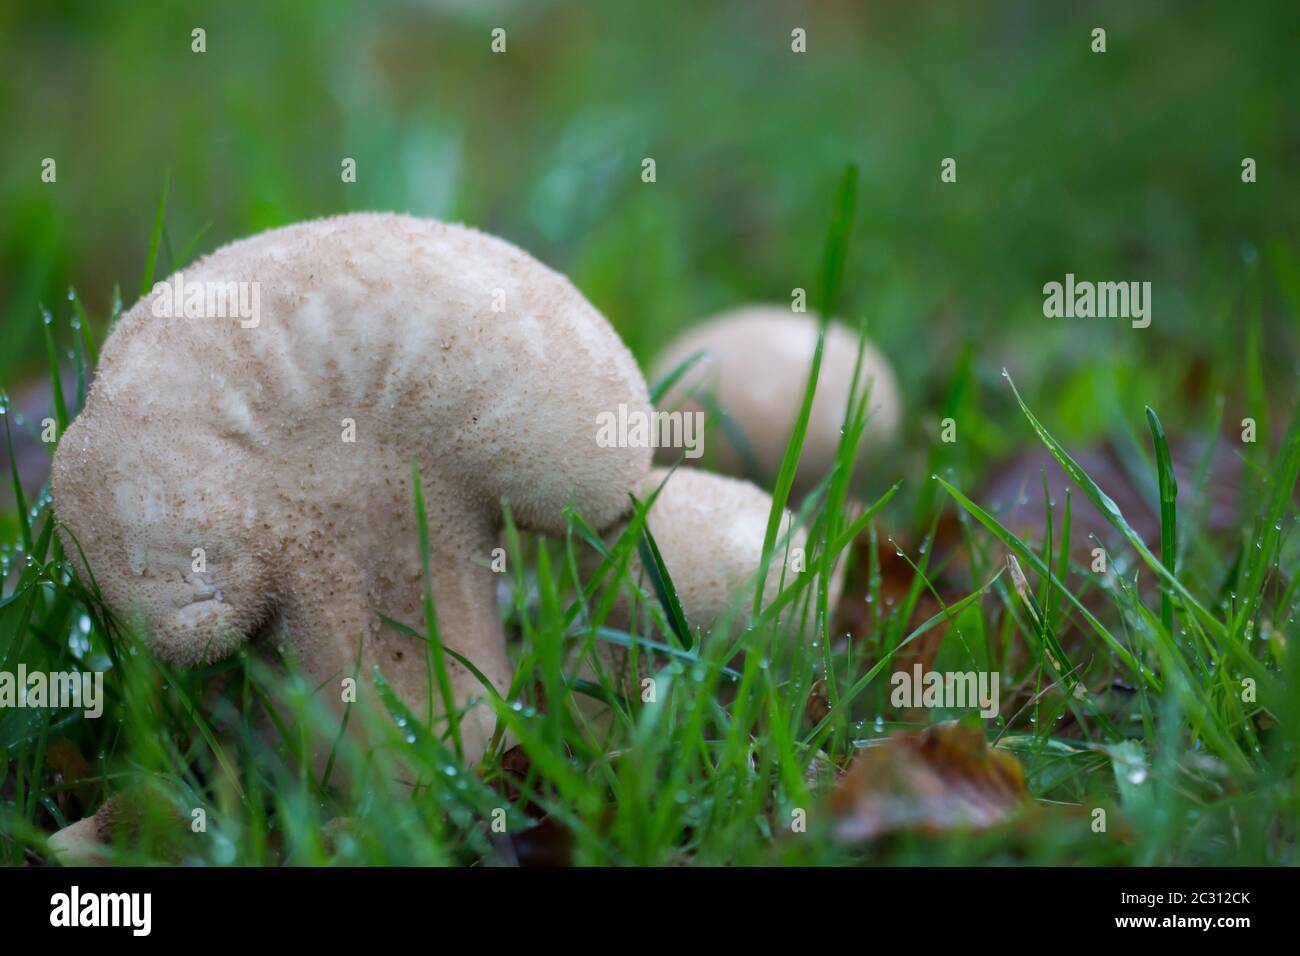 Im Gras wachsende gewöhnliche Puffbälle (Lycoperdon perlatum) Stockfoto